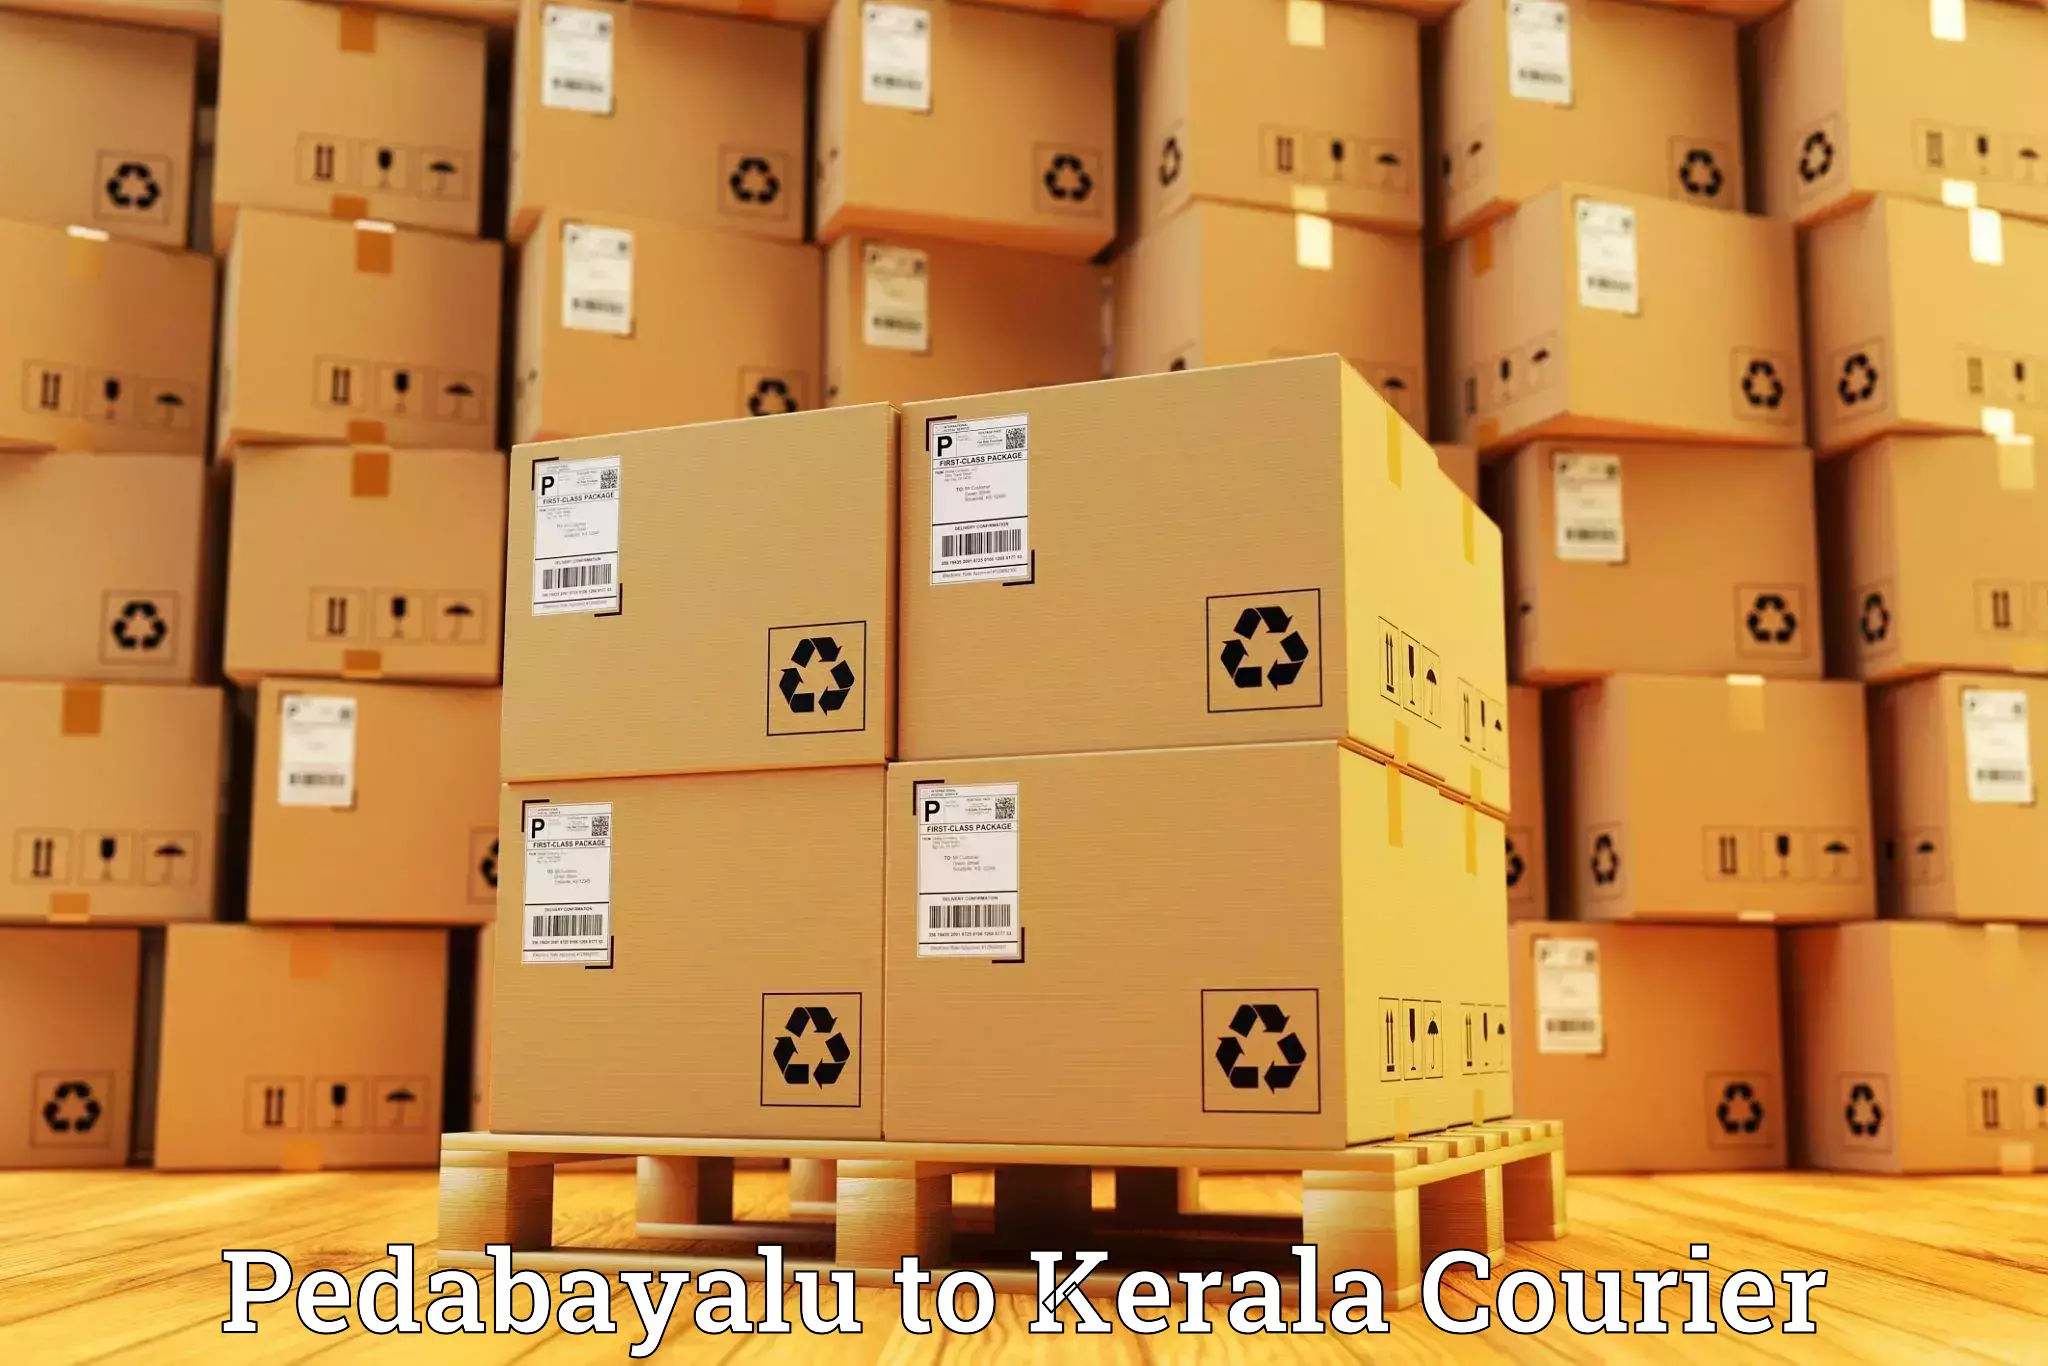 Global shipping networks Pedabayalu to Kuthuparamba